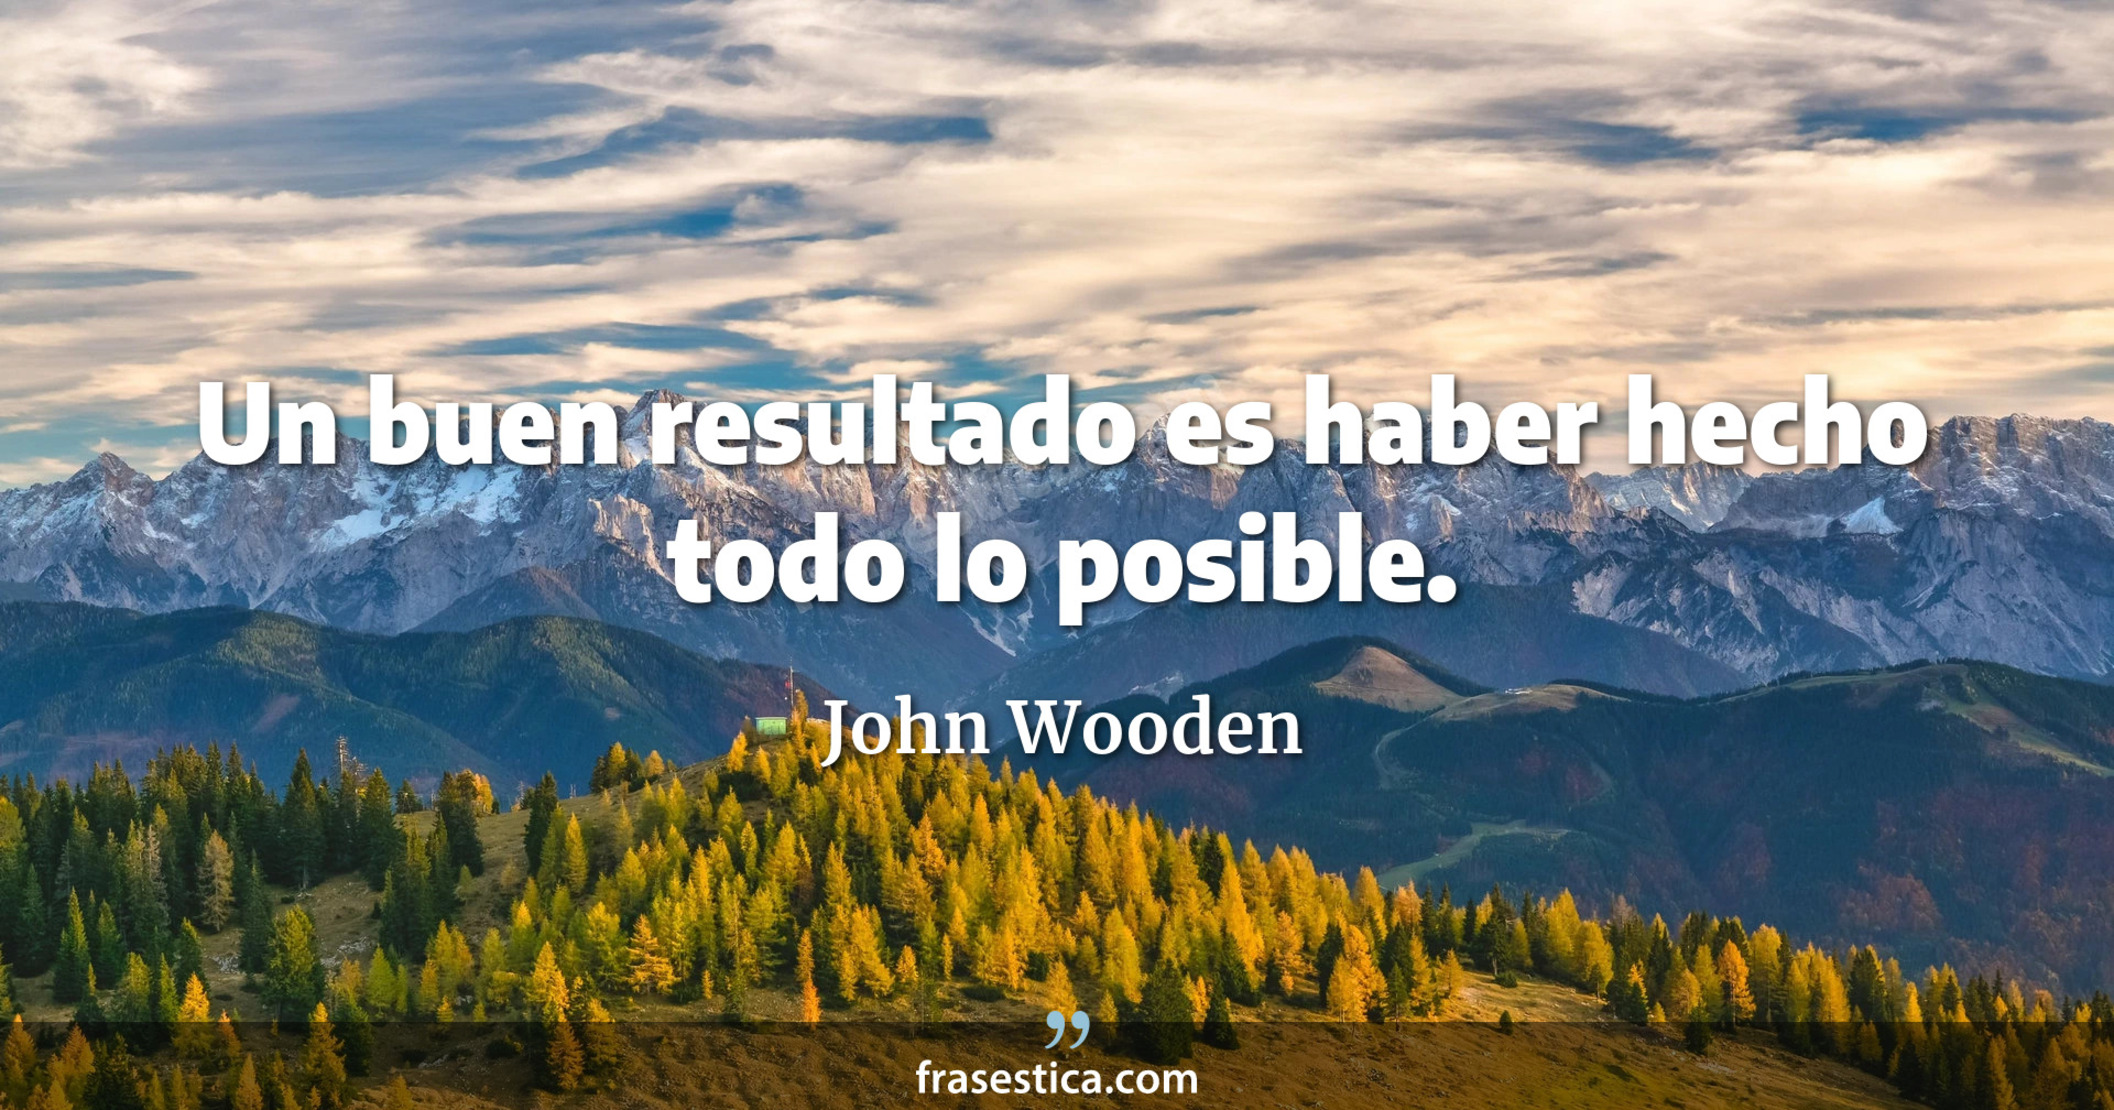 Un buen resultado es haber hecho todo lo posible. - John Wooden